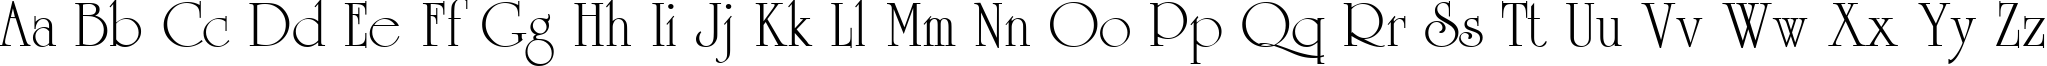 Пример написания английского алфавита шрифтом Reverence Normal